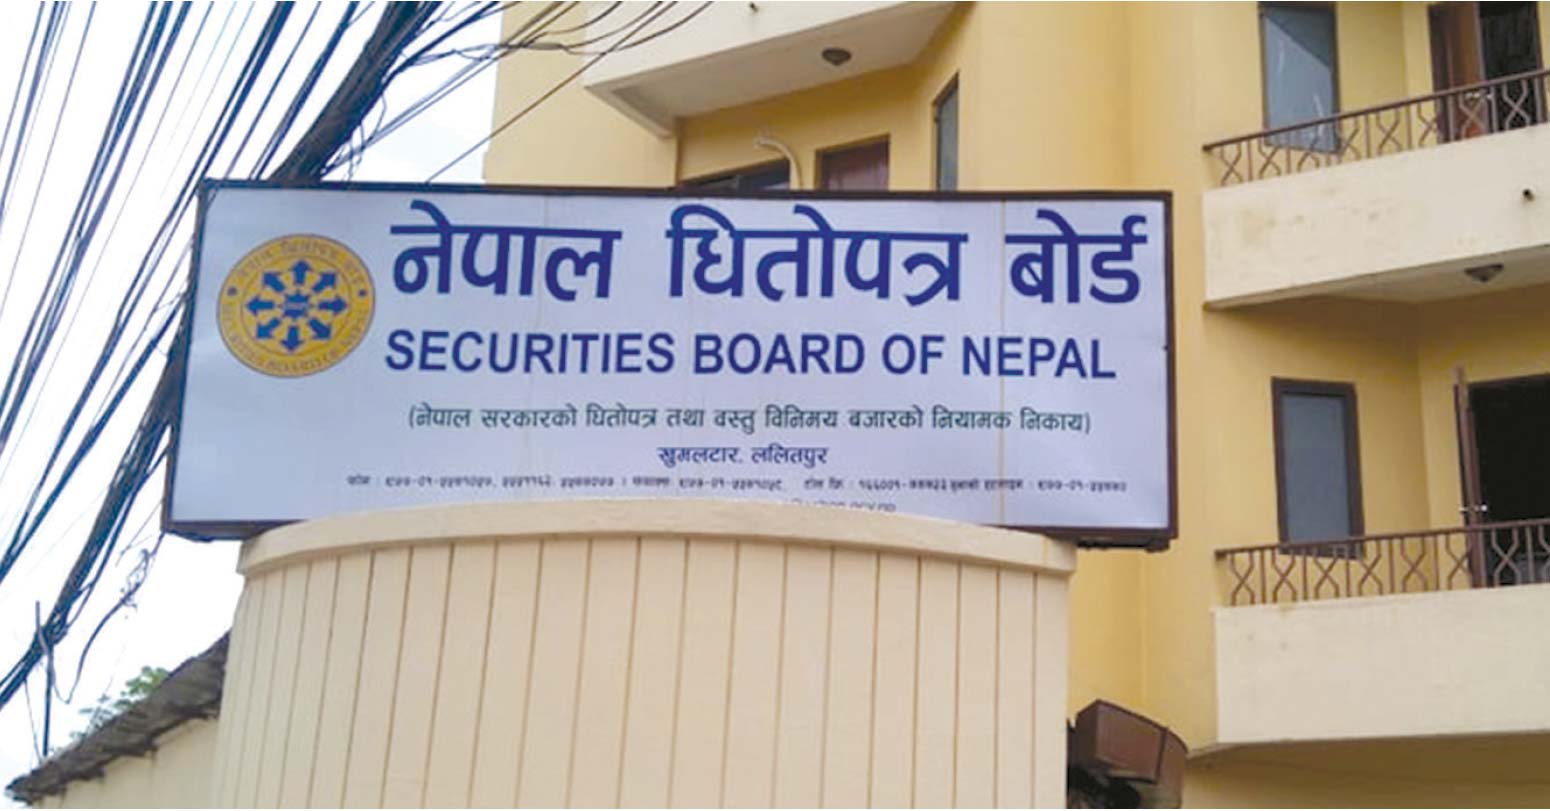 नेपाल धितोपत्र बोर्डको प्रशासकीय प्रमुखको जिम्मेवारी अधिकारीलाई